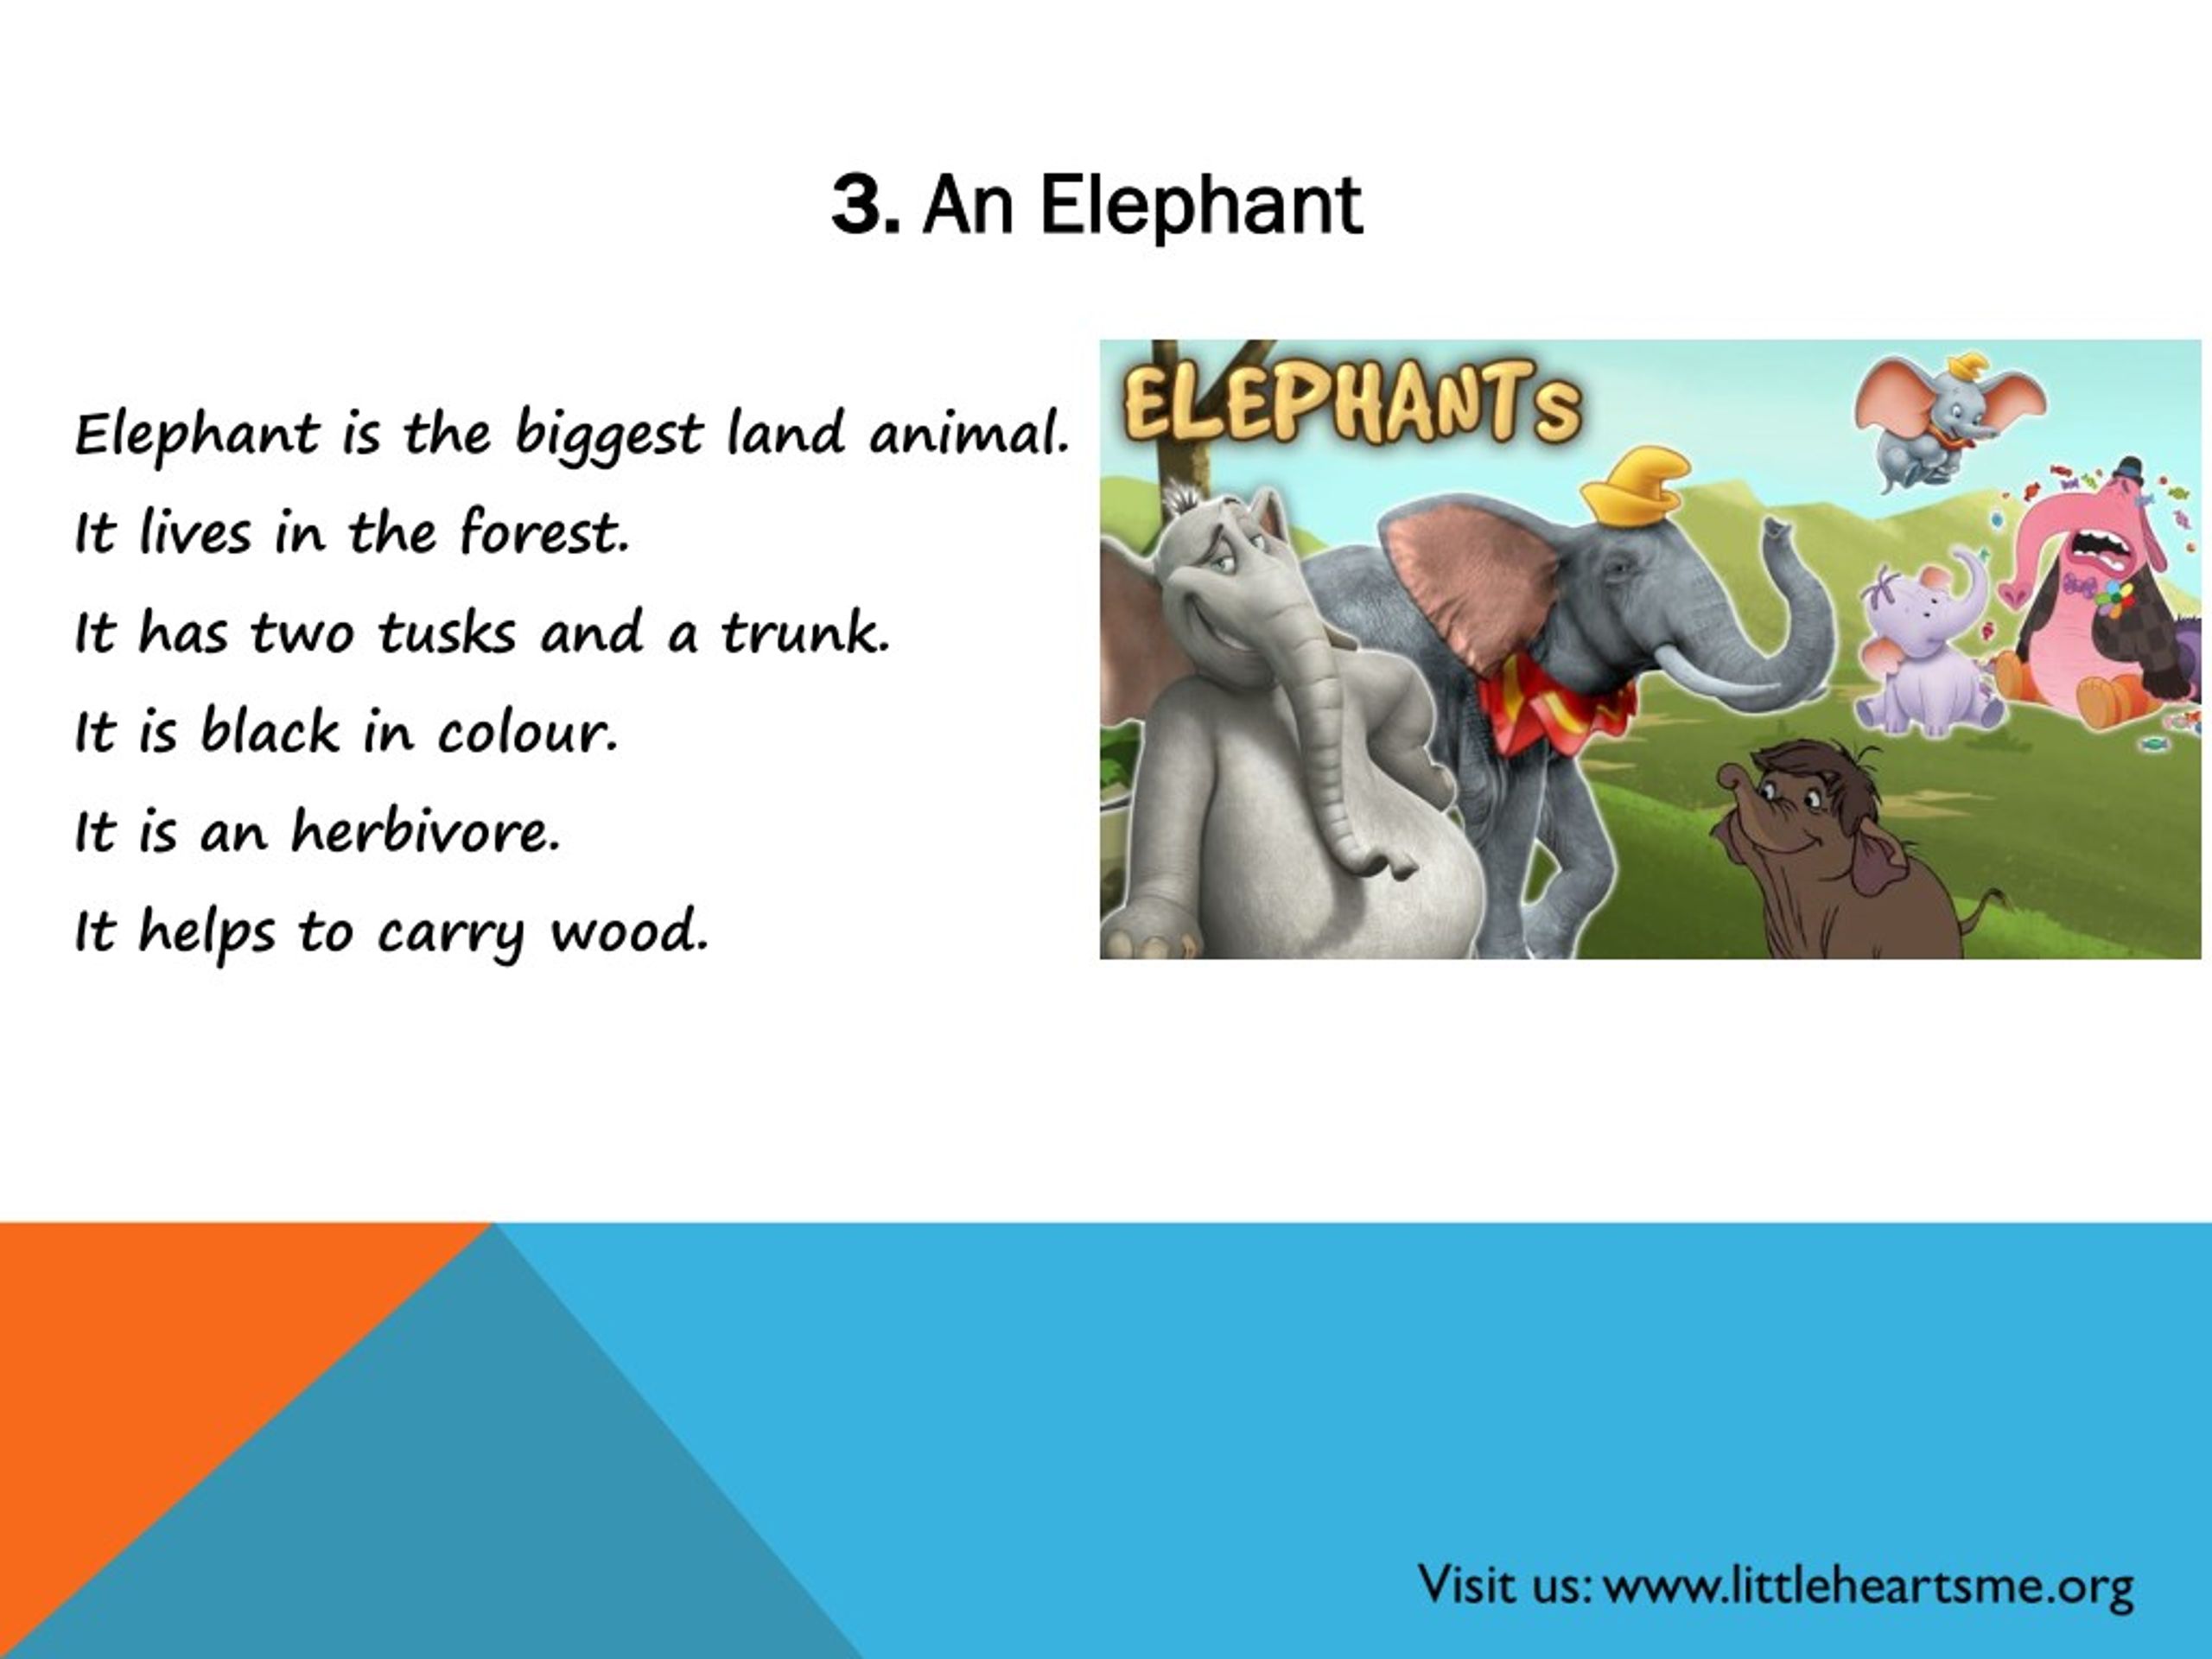 The elephant is mine. A Elephant или an. My favourite animal is Elephant.. Elephant is biggest animal in the Land. An Elephant is Heavier than me.